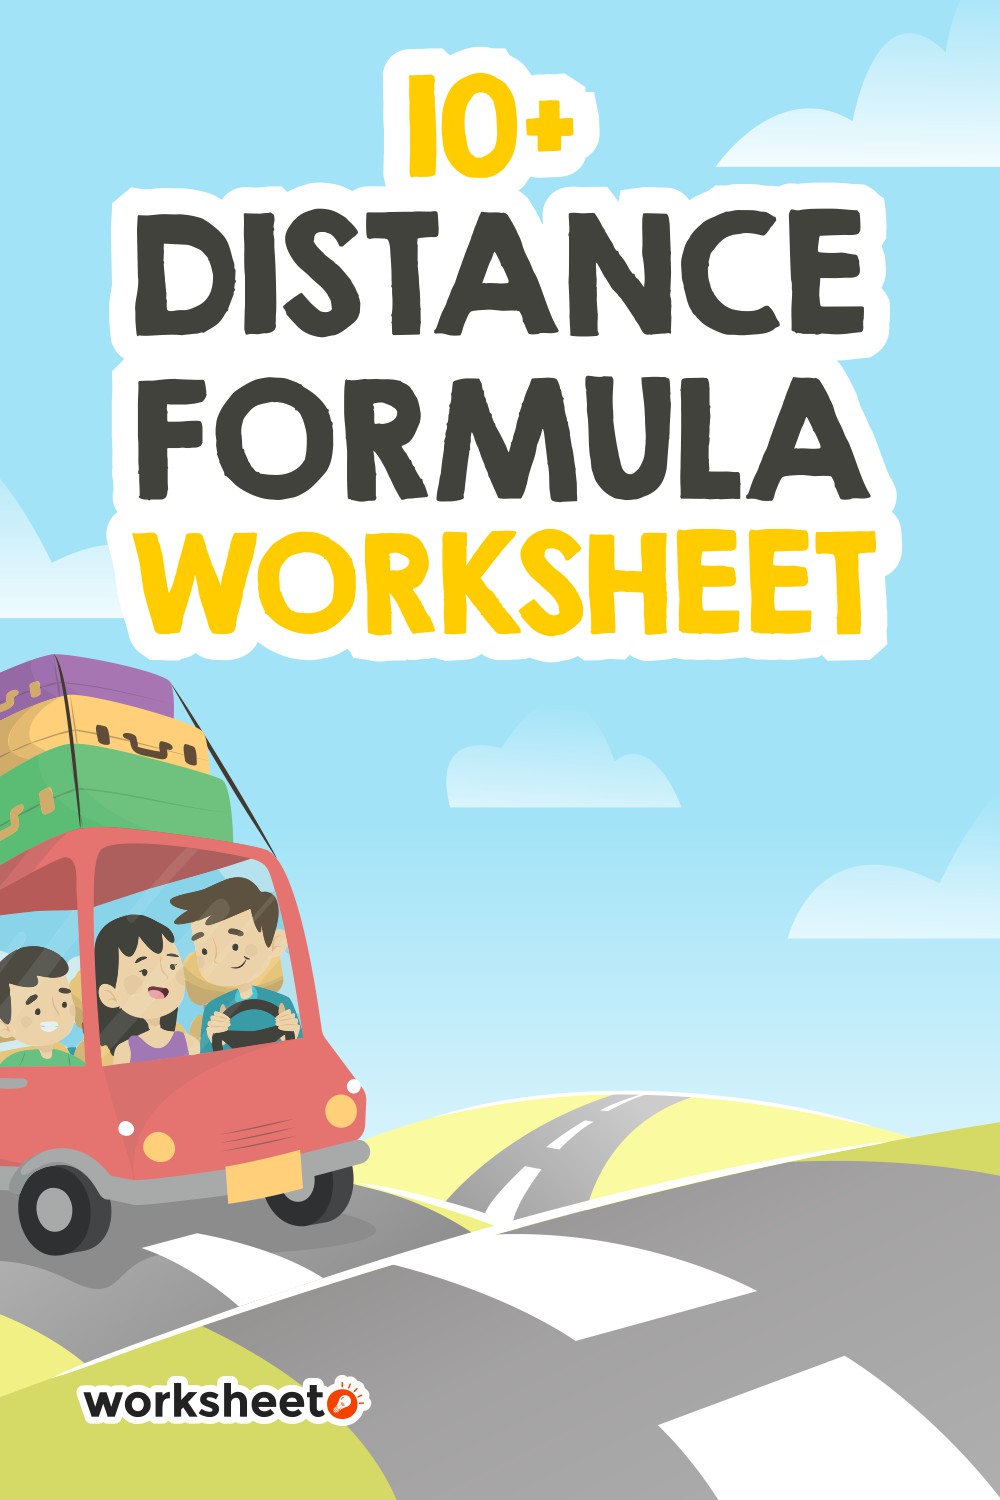 11 Images of Distance Formula Worksheet